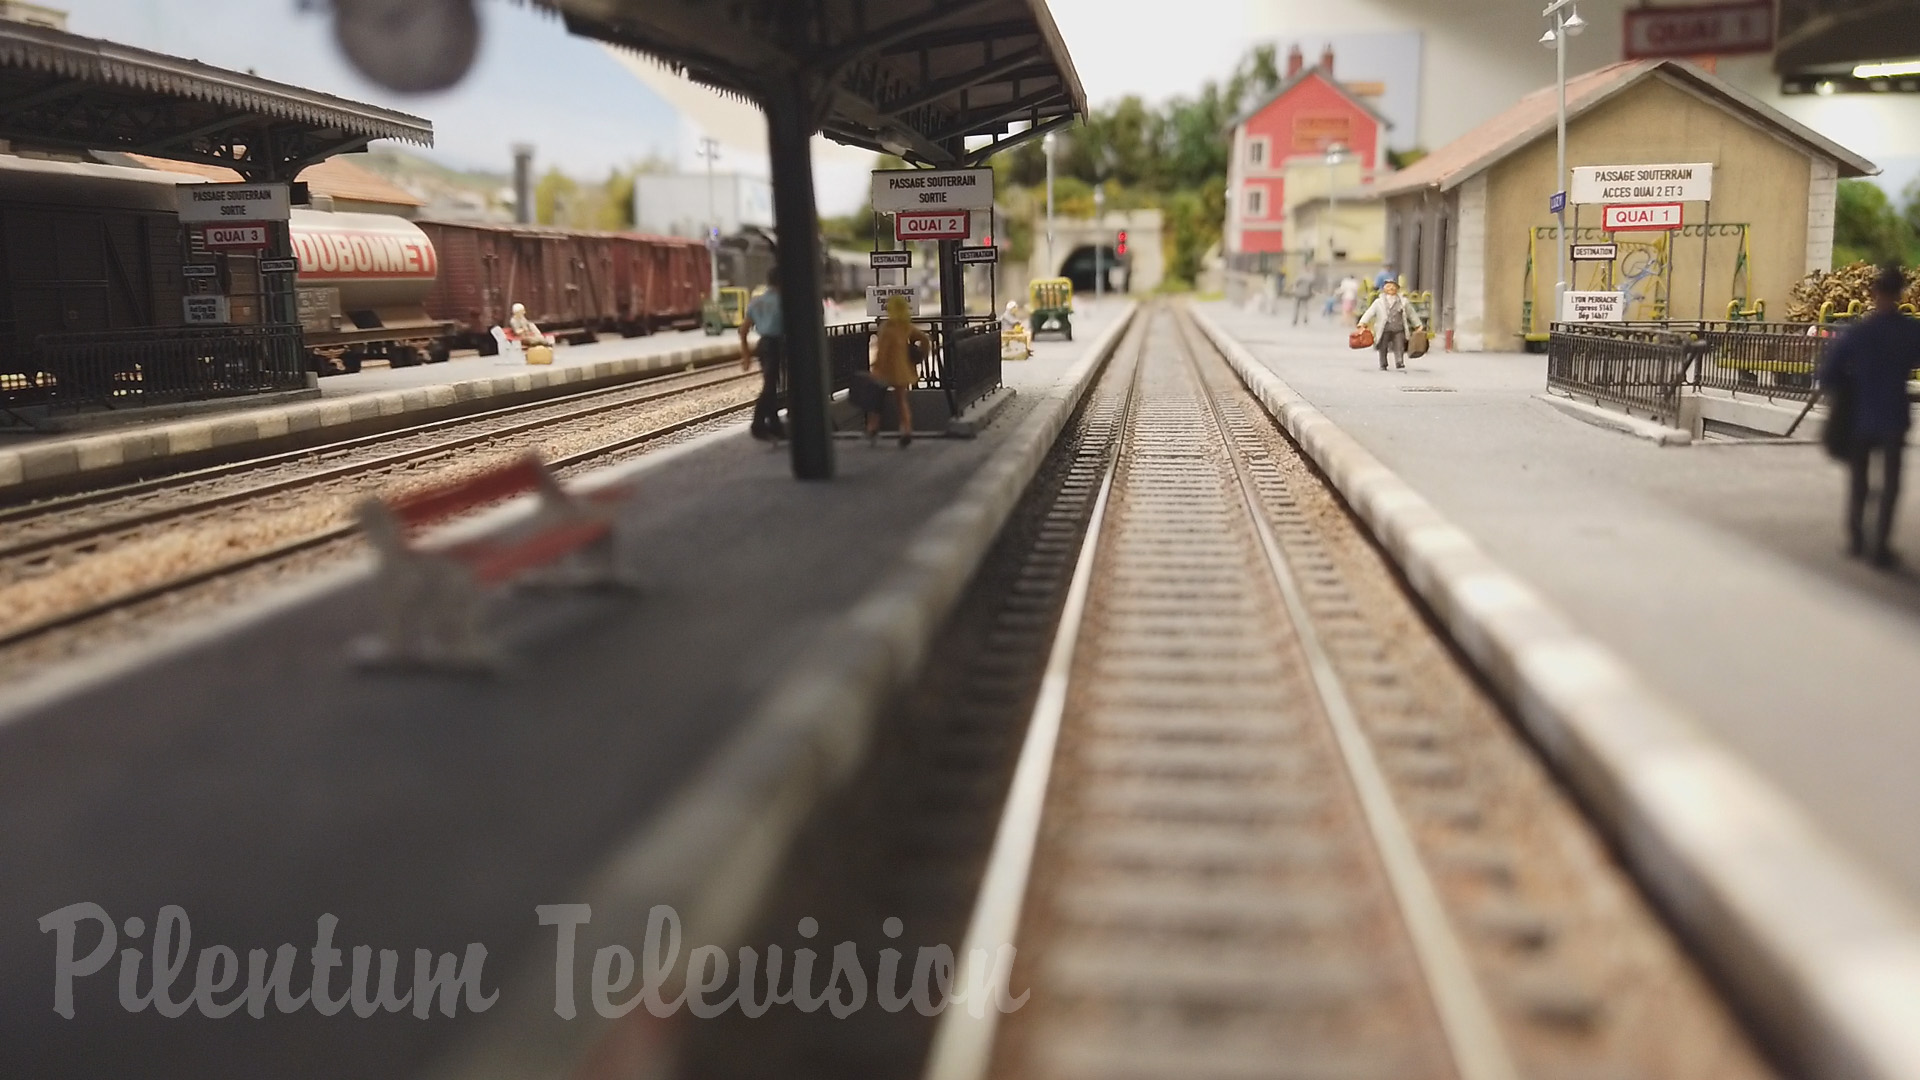 Une des plus belles maquettes de trains miniatures en France - Le réseau H0 de Renaud Yver